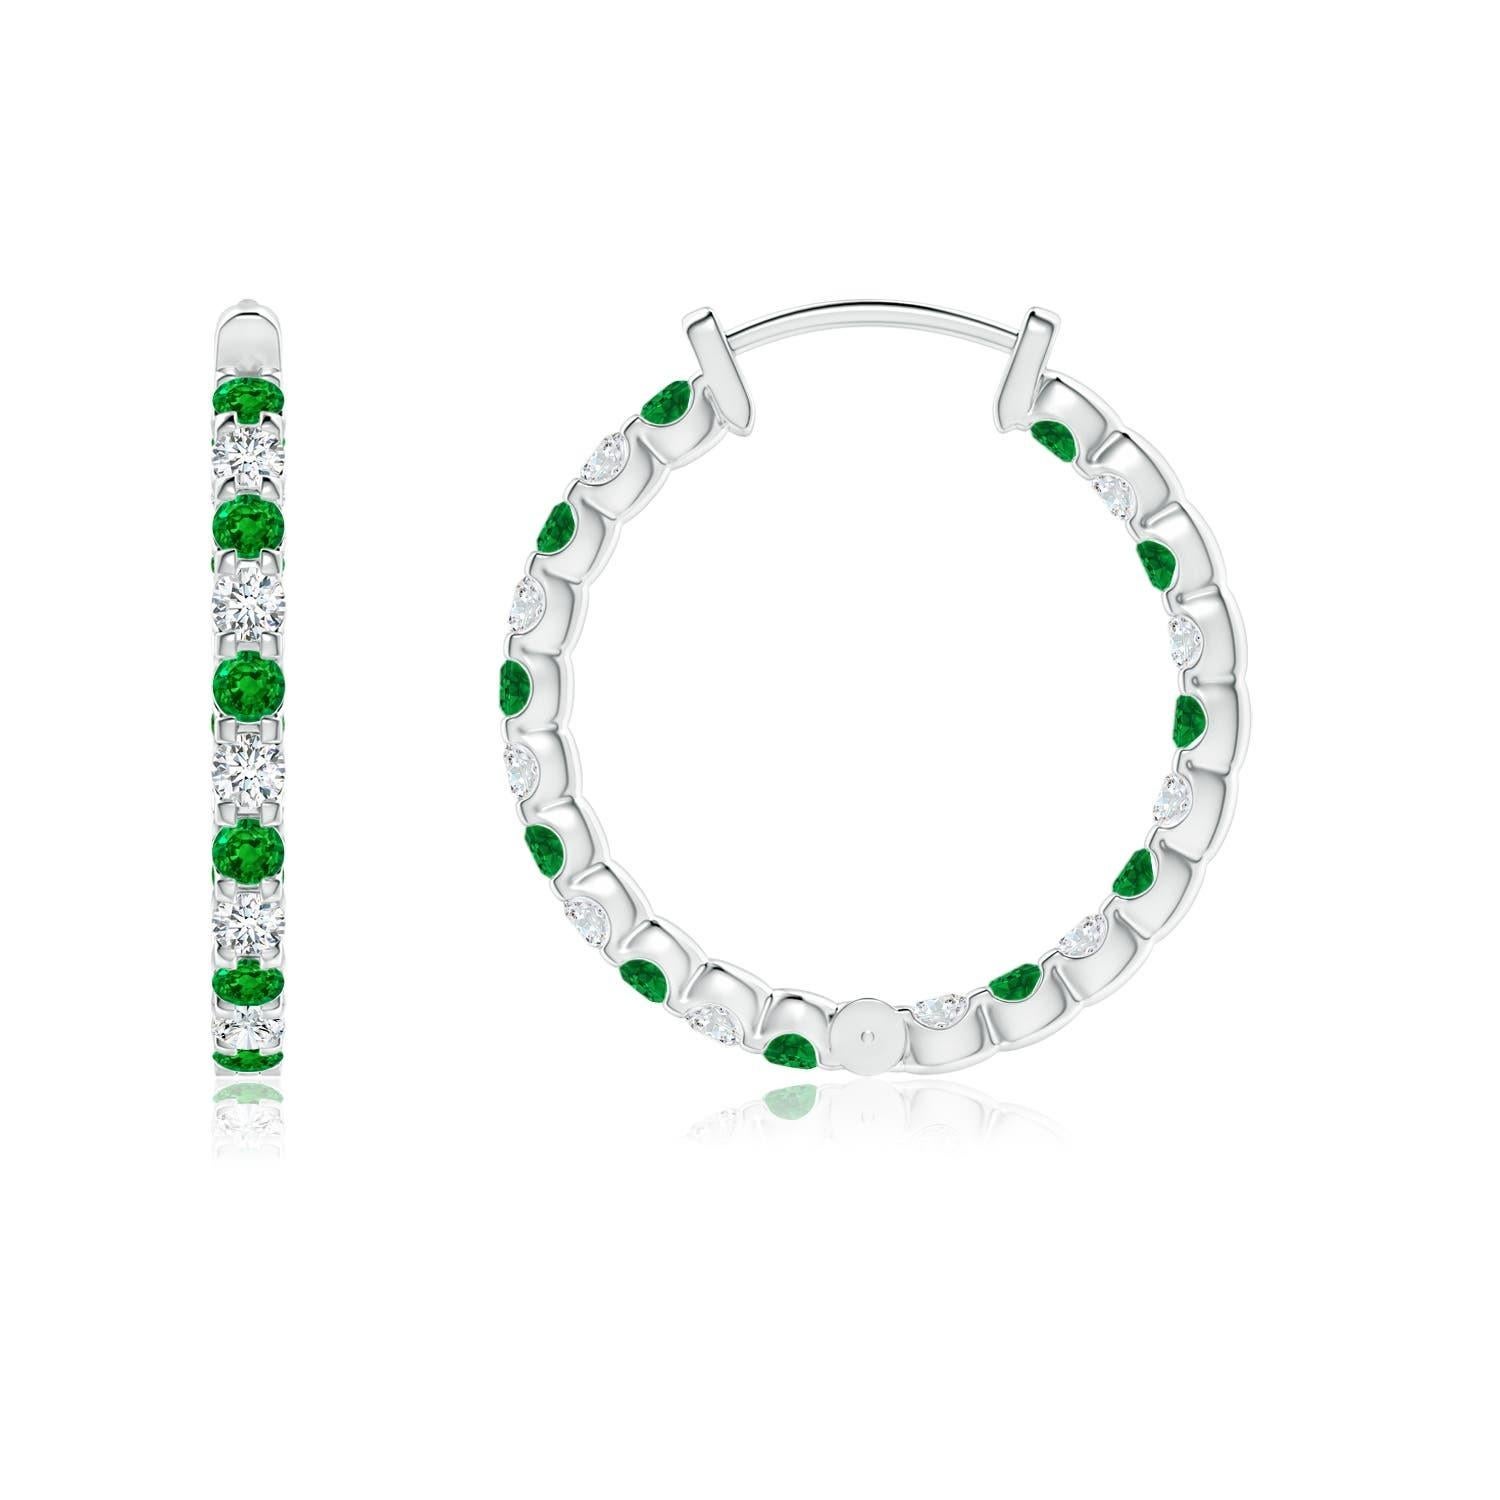 Ces magnifiques boucles d'oreilles sont composées d'émeraudes vertes et de diamants brillants, montés en alternance dans des montures à griffes. Les pierres précieuses scintillantes sont embellies à l'extérieur comme à l'intérieur de ces anneaux en